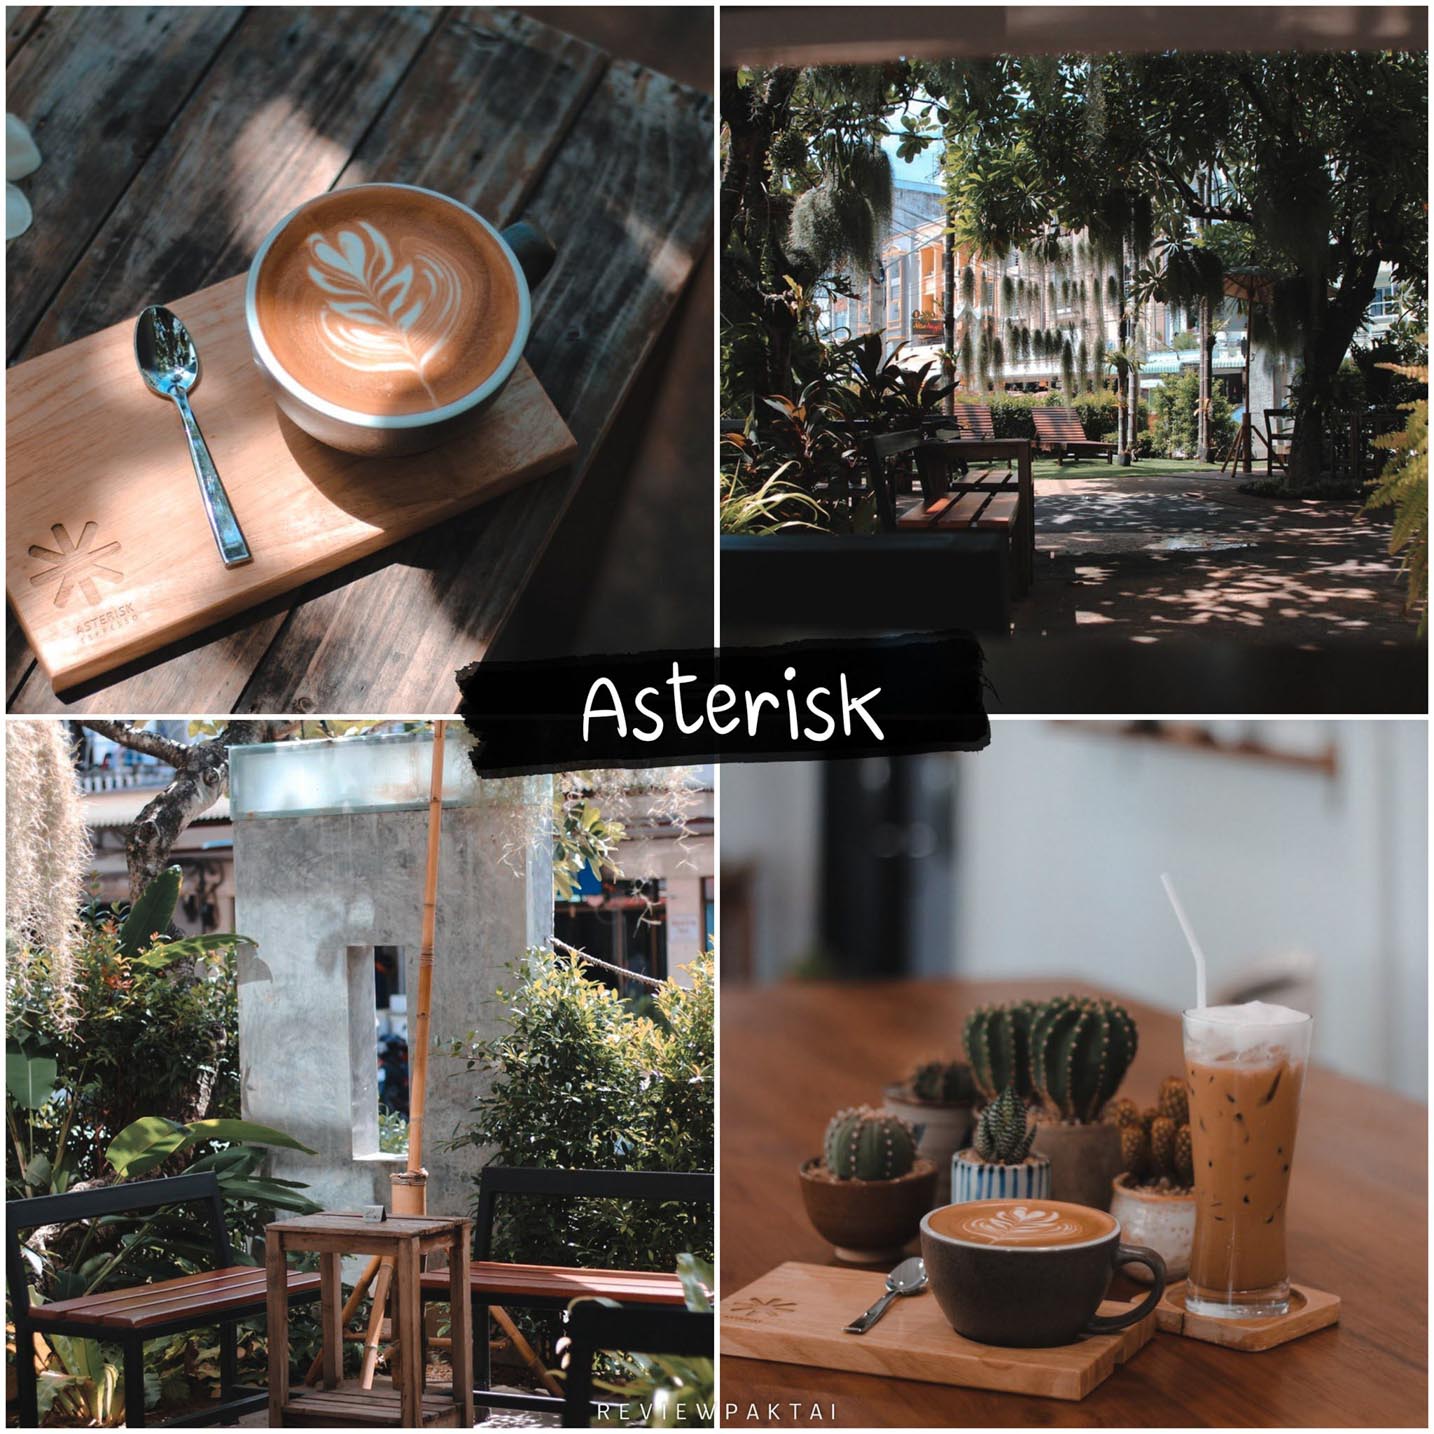 Asterisk espresso จุดเช็คอินภูเก็ต  กาแฟดี ร้านมีทีเด็ดเรื่องกาแฟ คอกาแฟจะปลื้มแน่นอนที่นี้ ที่ร้านมีกาแฟหลายสายพันธุ์ให้เลือกให้ลอง ไม่มาคือพลาดมากแม่!!